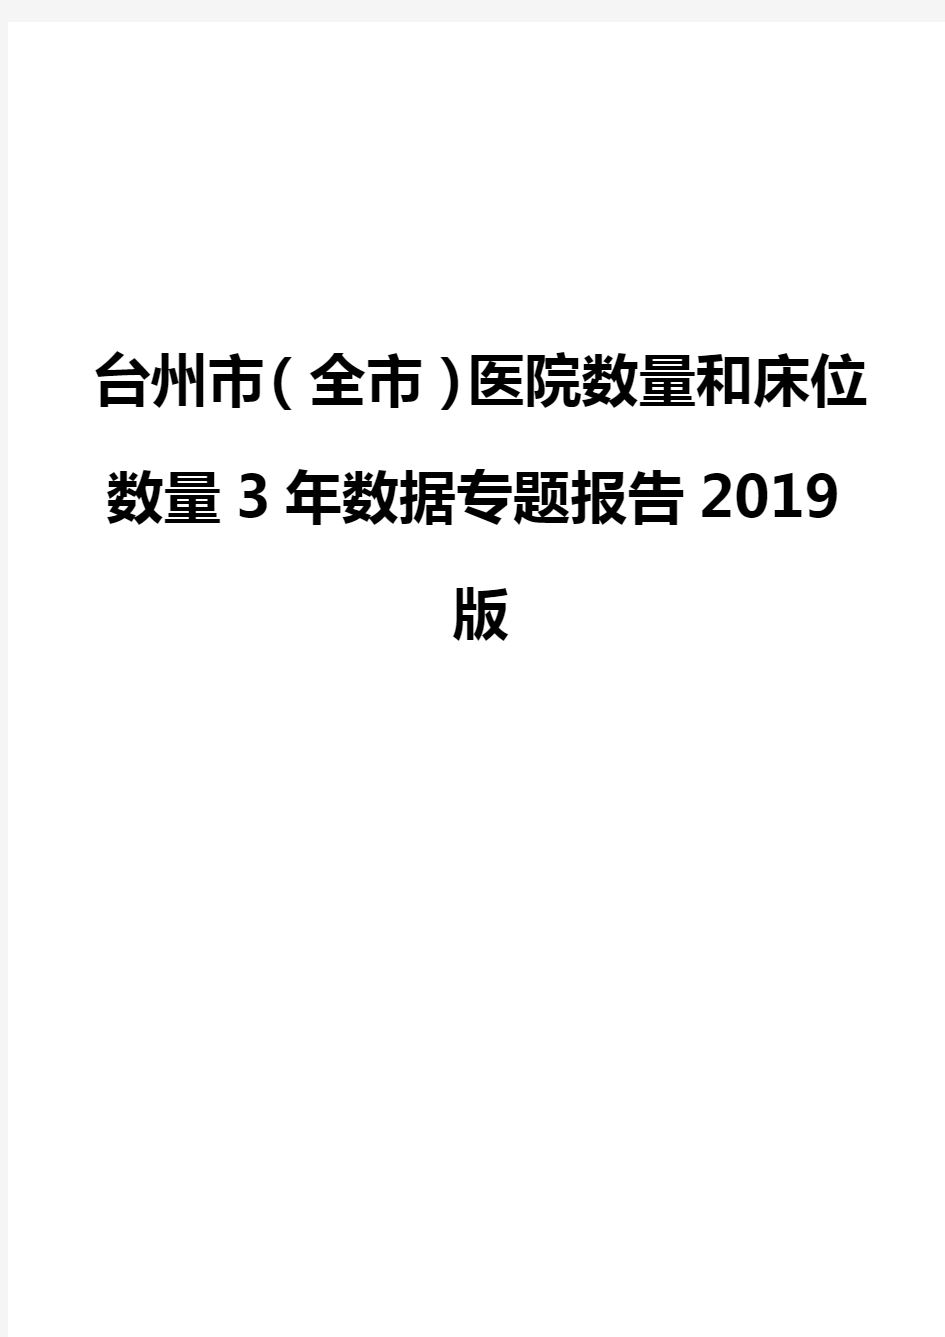 台州市(全市)医院数量和床位数量3年数据专题报告2019版